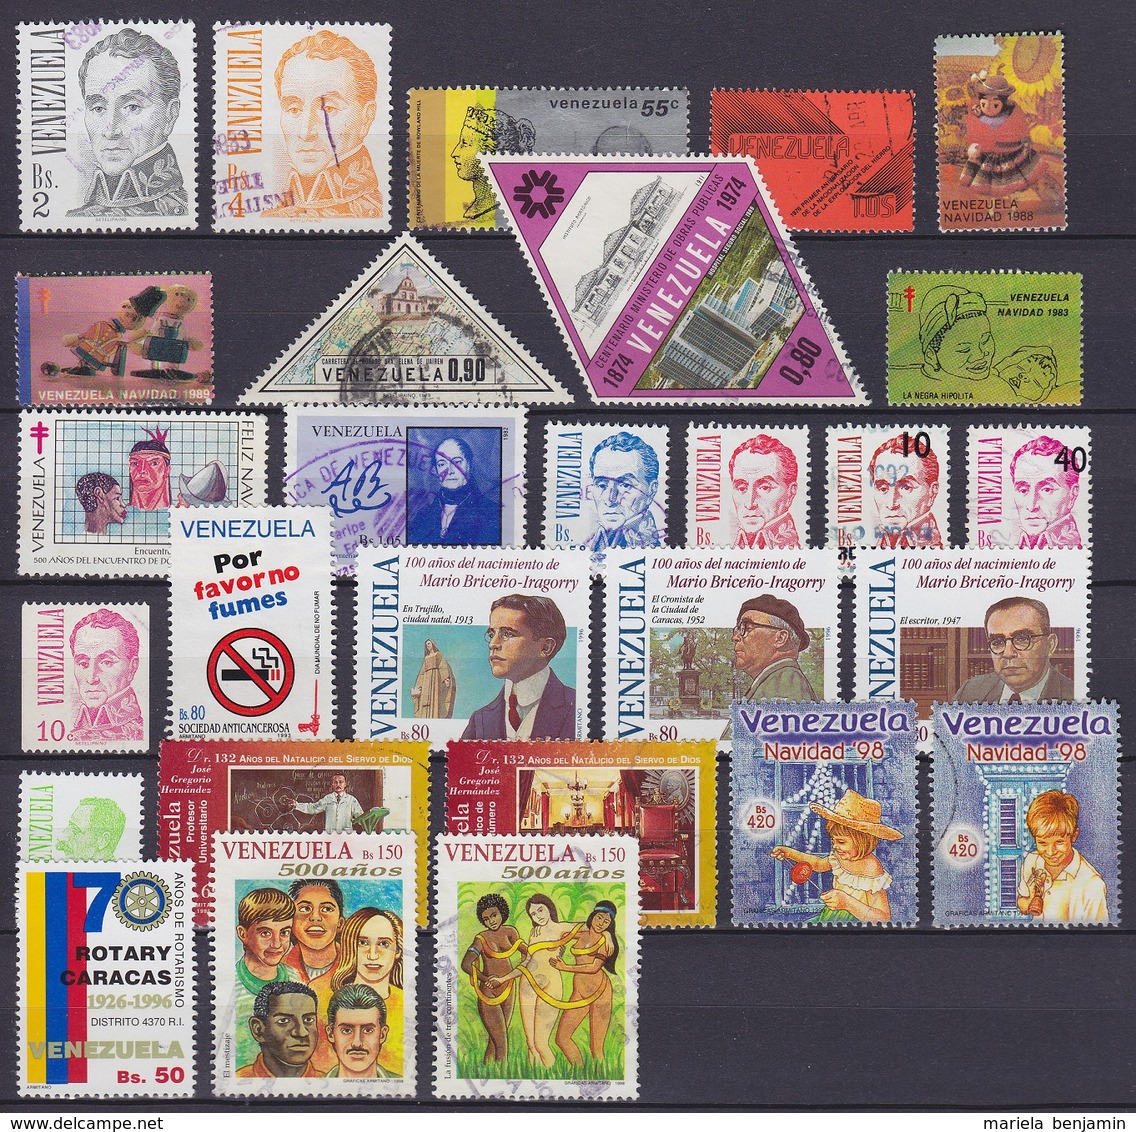 Amérique du Latine - lot + de 520 timbres oblit. - voir scans (Argentine, Brésil, Bolivie, Chili, Equateur, Rép. Dominic